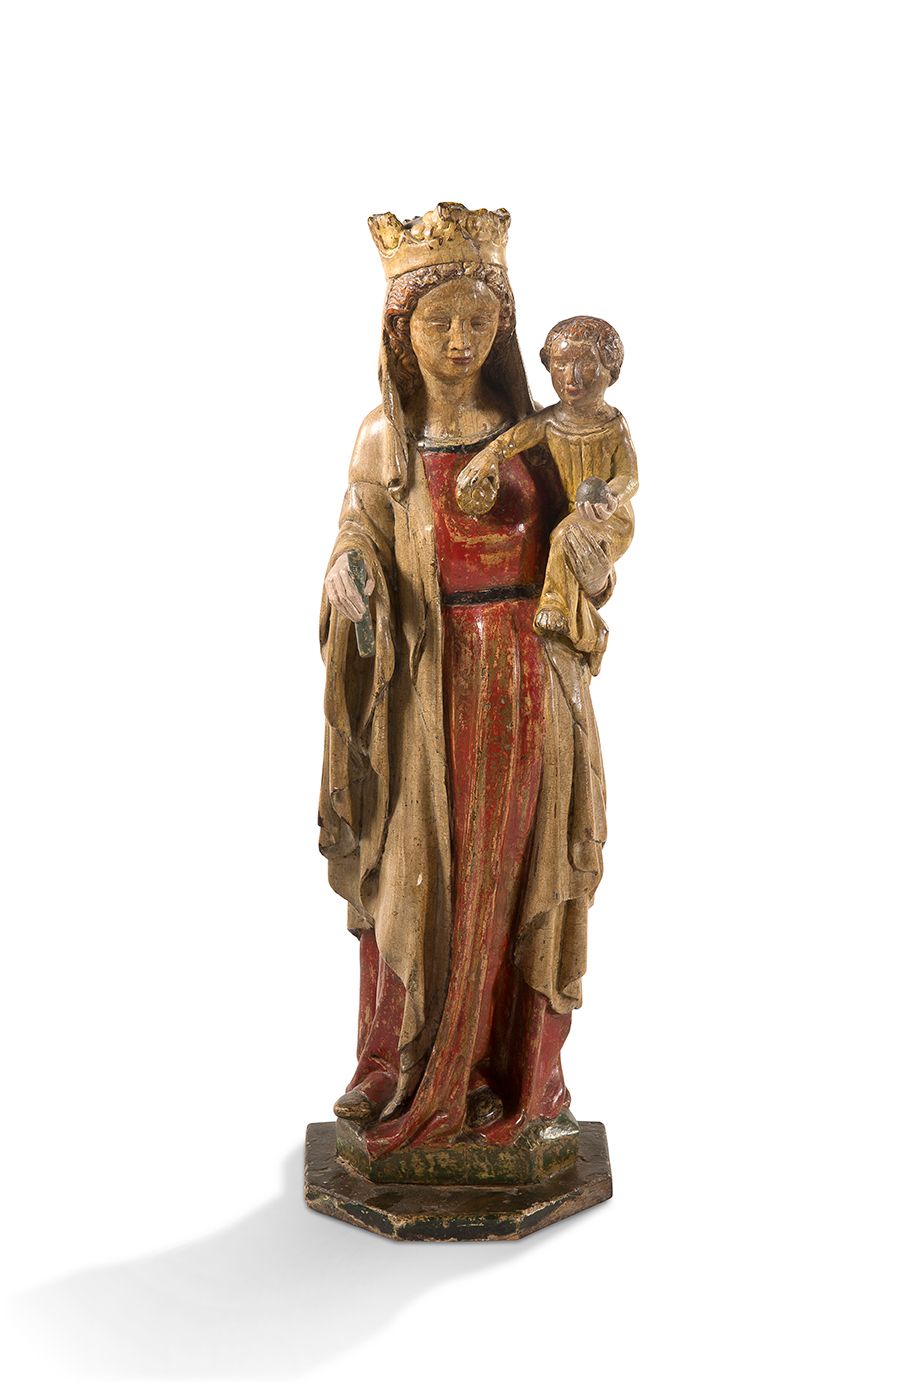 Null 
+ 胡桃木雕刻，多色和镀金，粗糙的背面，带孩子的圣母。她略显蹒跚，左手抱着孩子；波浪形的头发上戴着花冠；大脸上有细长的眼睛，表情慈祥。



科隆，&hellip;